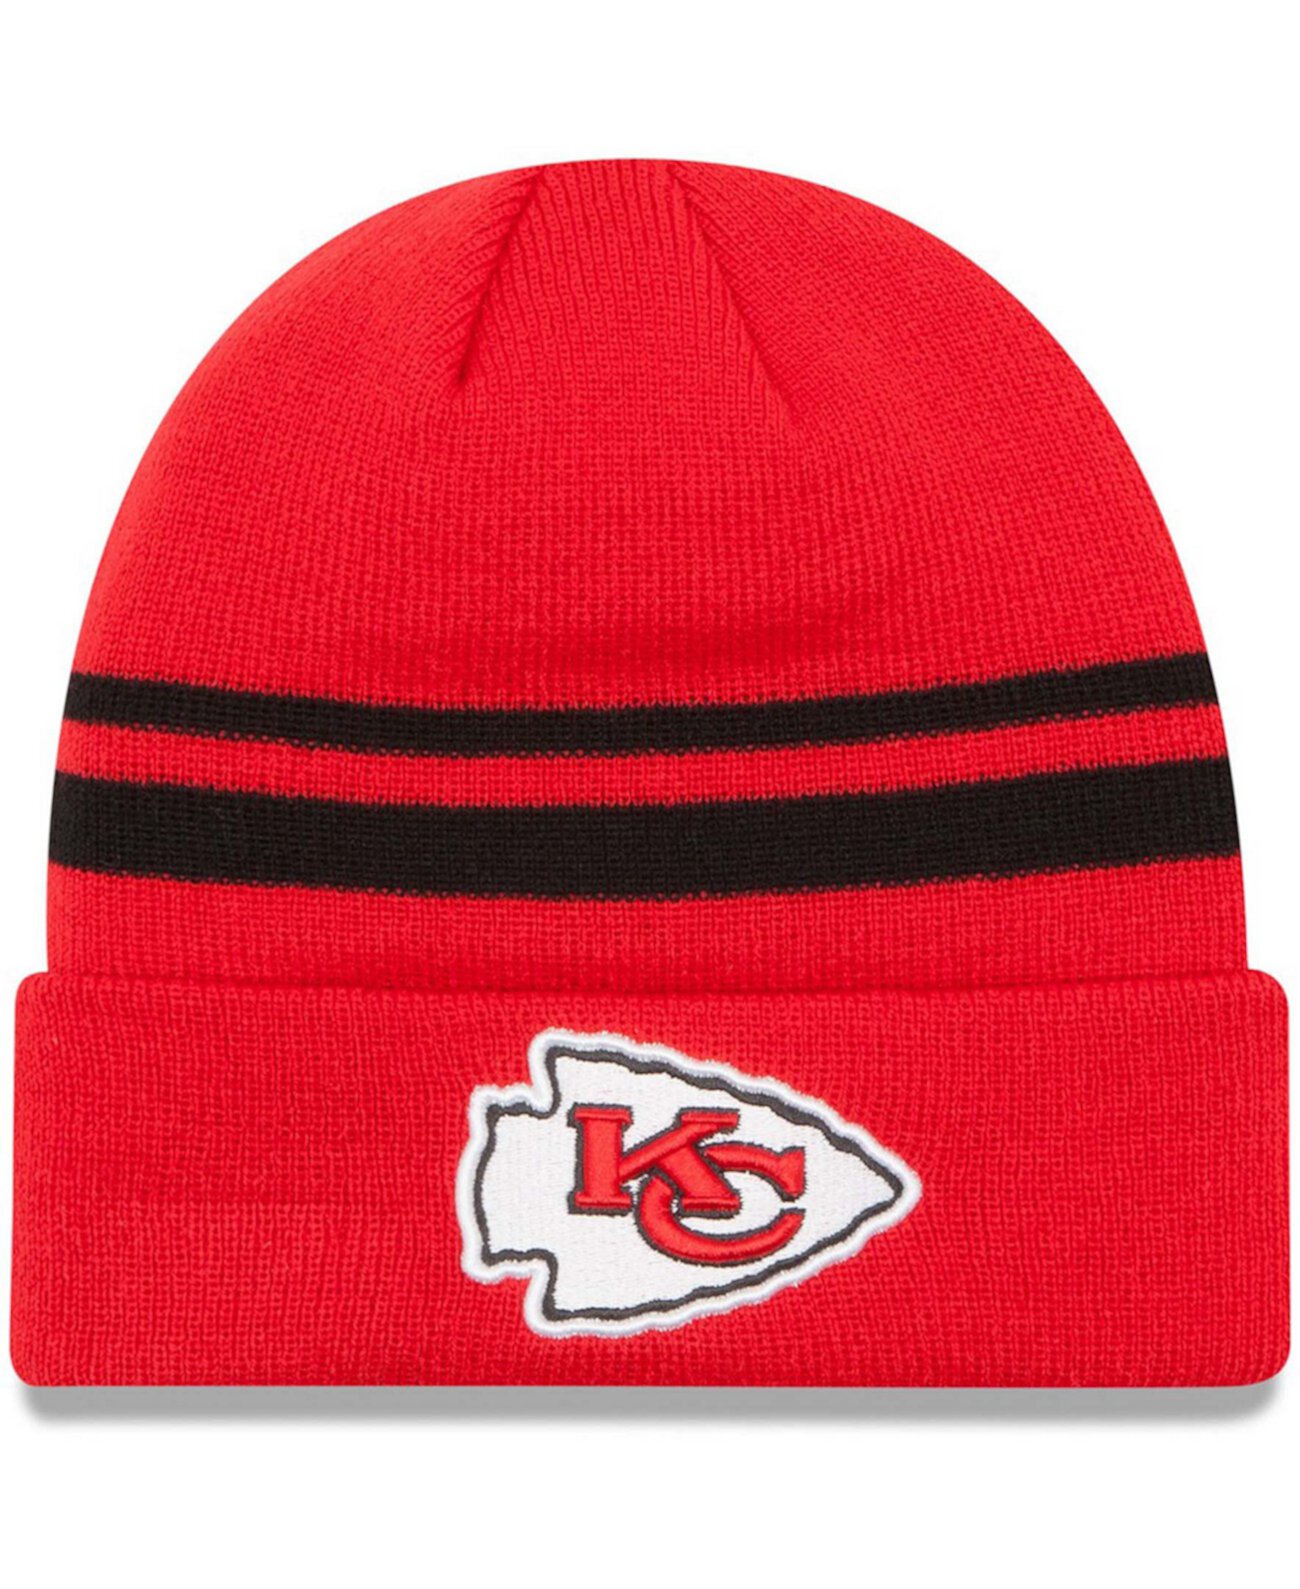 Красная мужская вязаная шапка New Era с манжетами и логотипом Kansas City Chiefs Team Lids